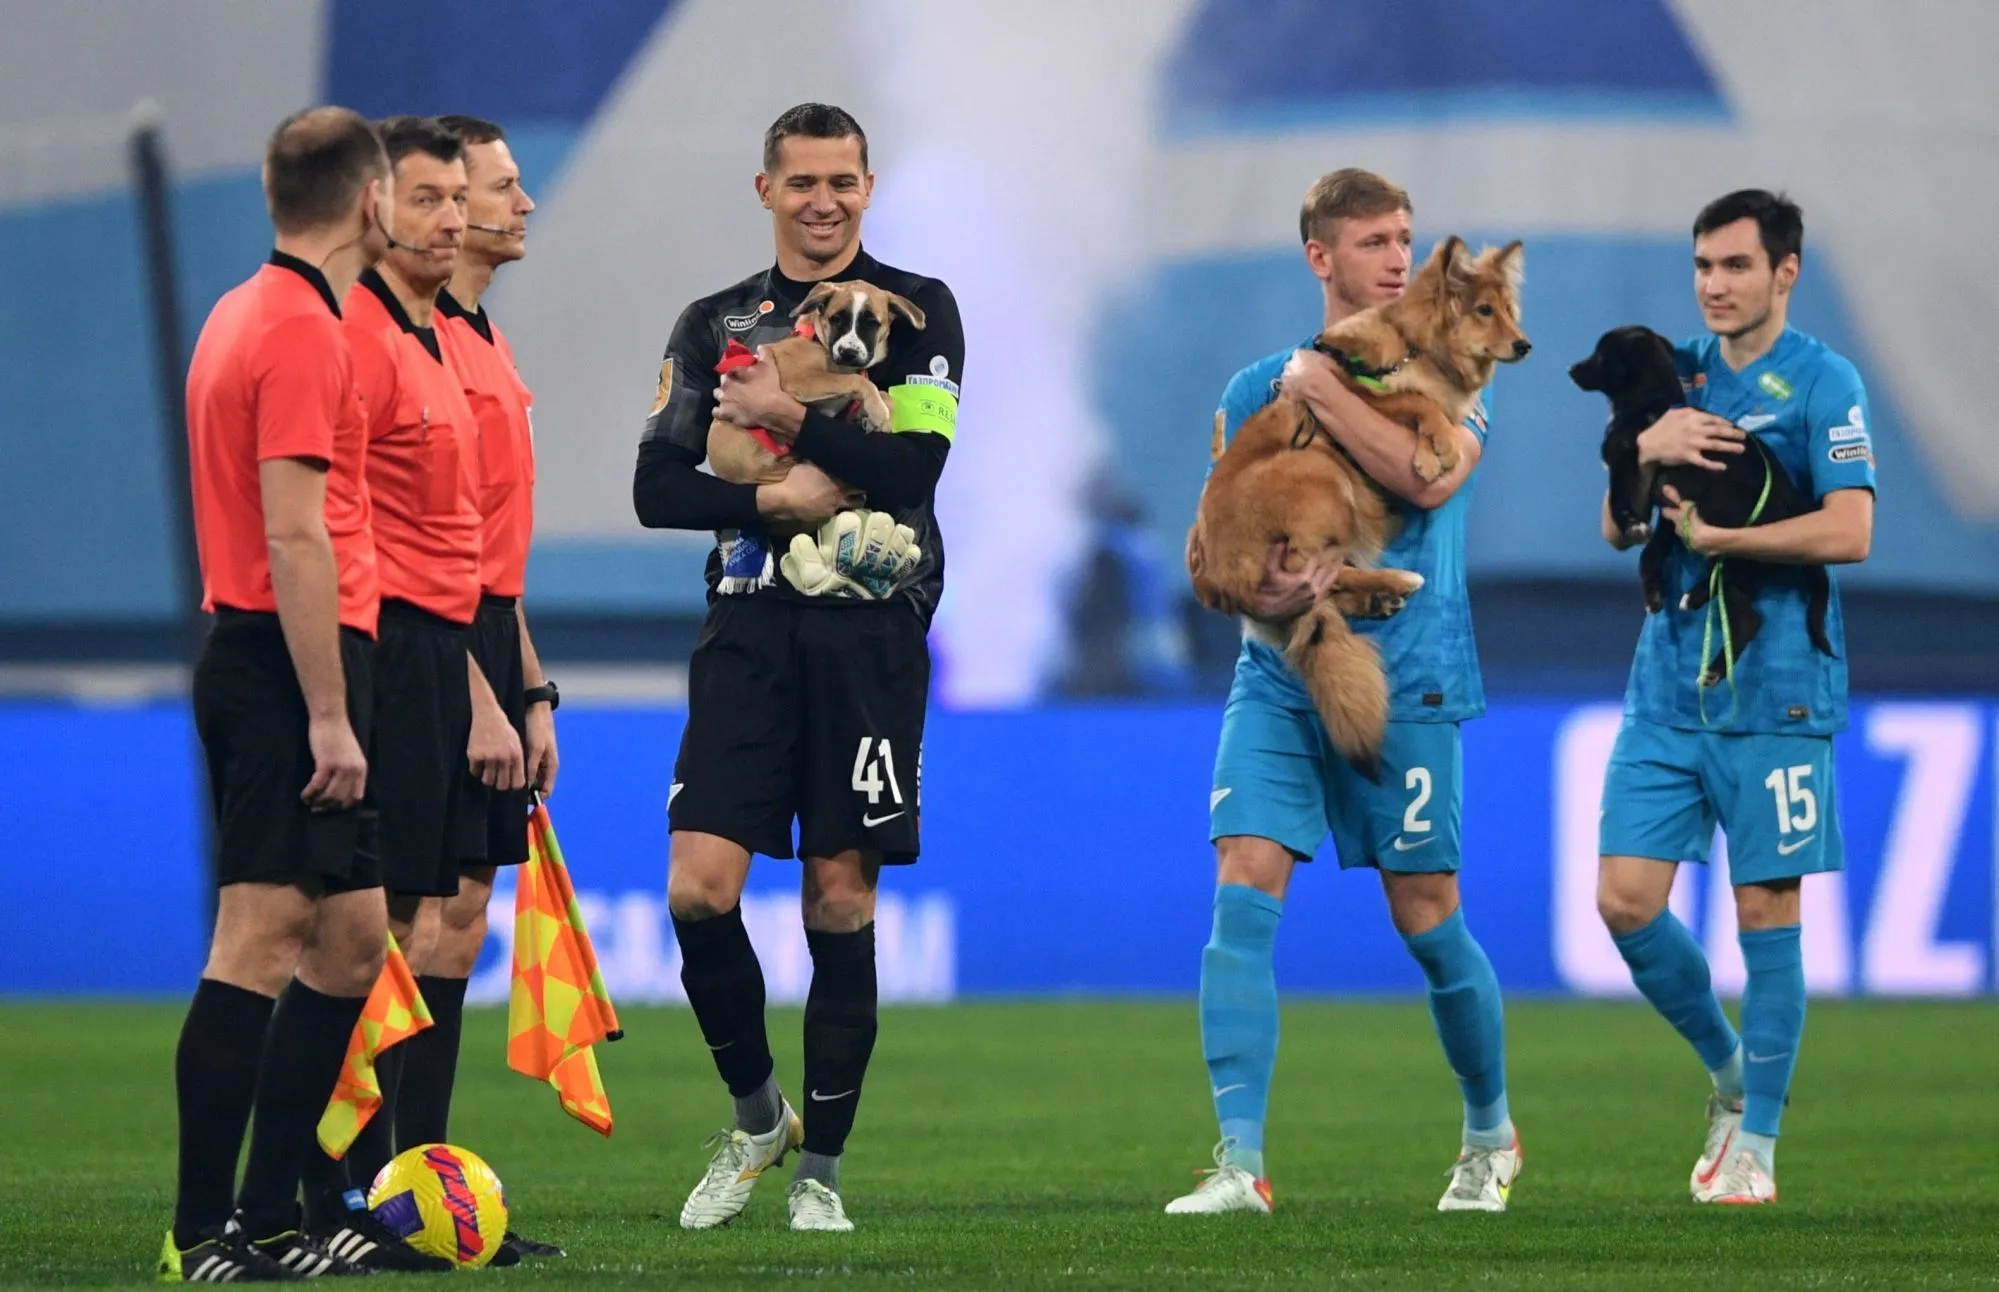 Les joueurs du Zénith entrent sur le terrain avec des chiens dans les bras